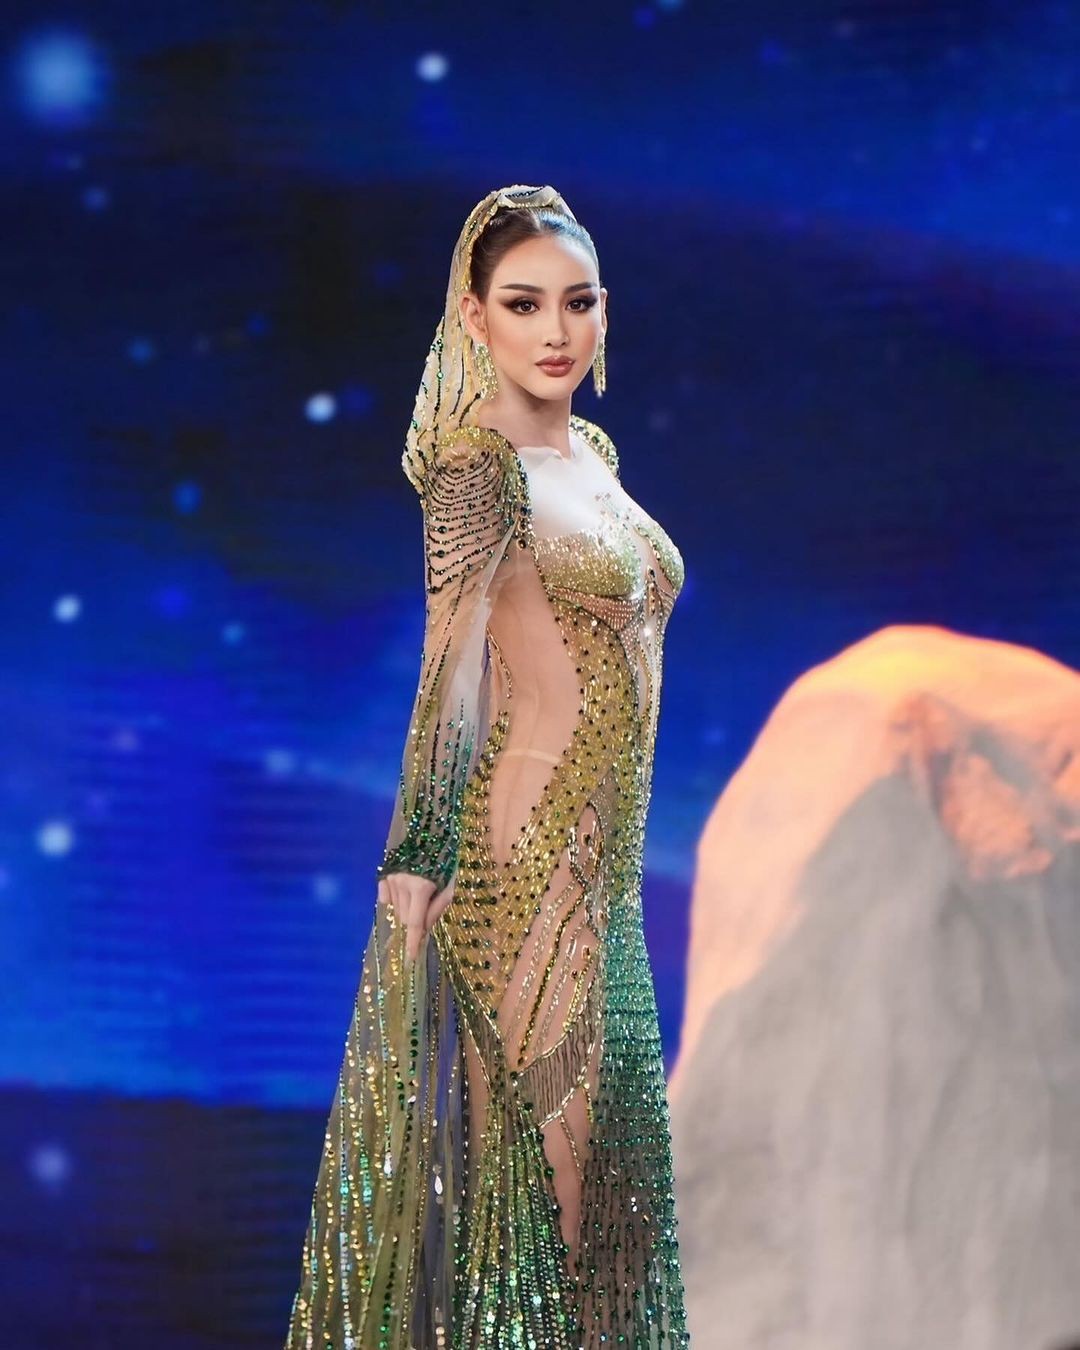 Người đẹp cao 1,76 m gây chú ý ở Hoa hậu Hòa bình Thái Lan ảnh 2